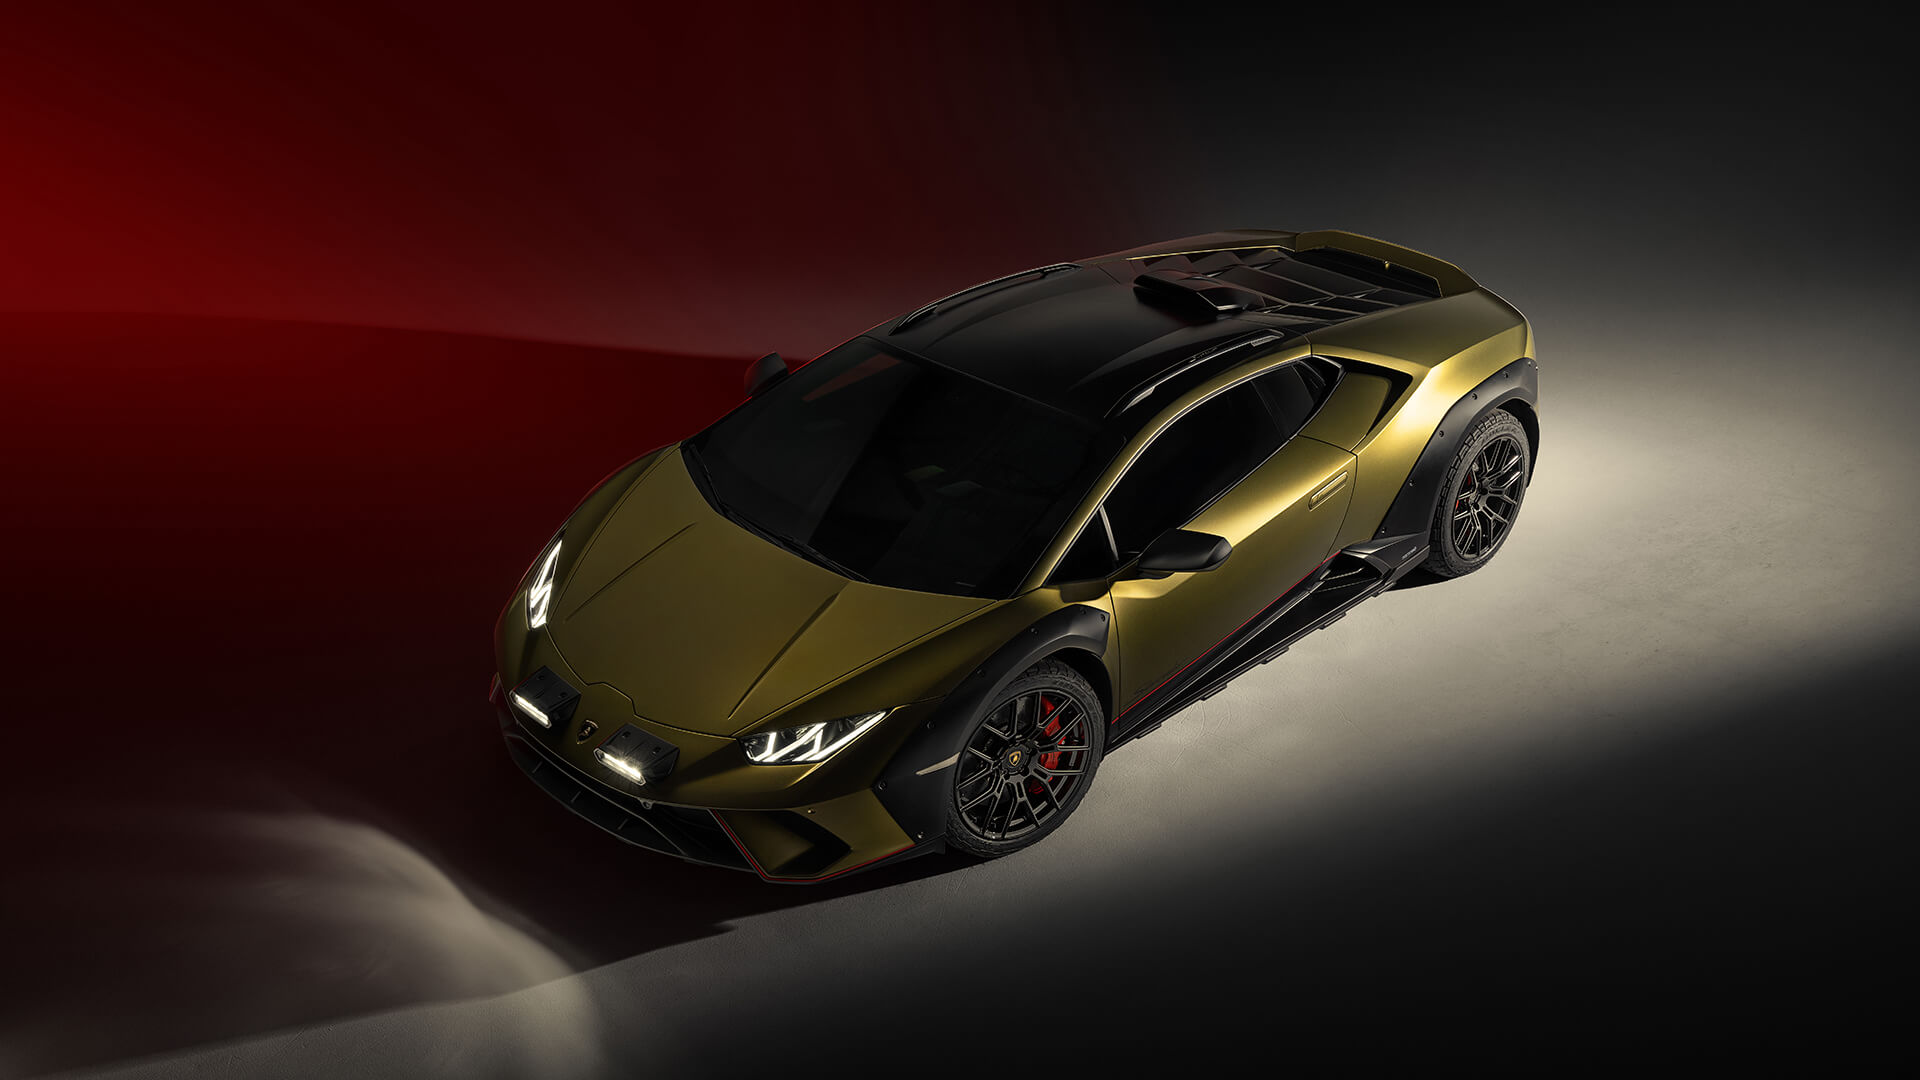 Với các thông số kỹ thuật công nghệ của mẫu siêu xe Lamborghini Huracán, điều này sẽ khiến bạn mê mẩn và đam mê nó hơn. Thưởng thức ngay những chi tiết đặc sắc về mẫu xe này thông qua bức ảnh đến từ chúng tôi.